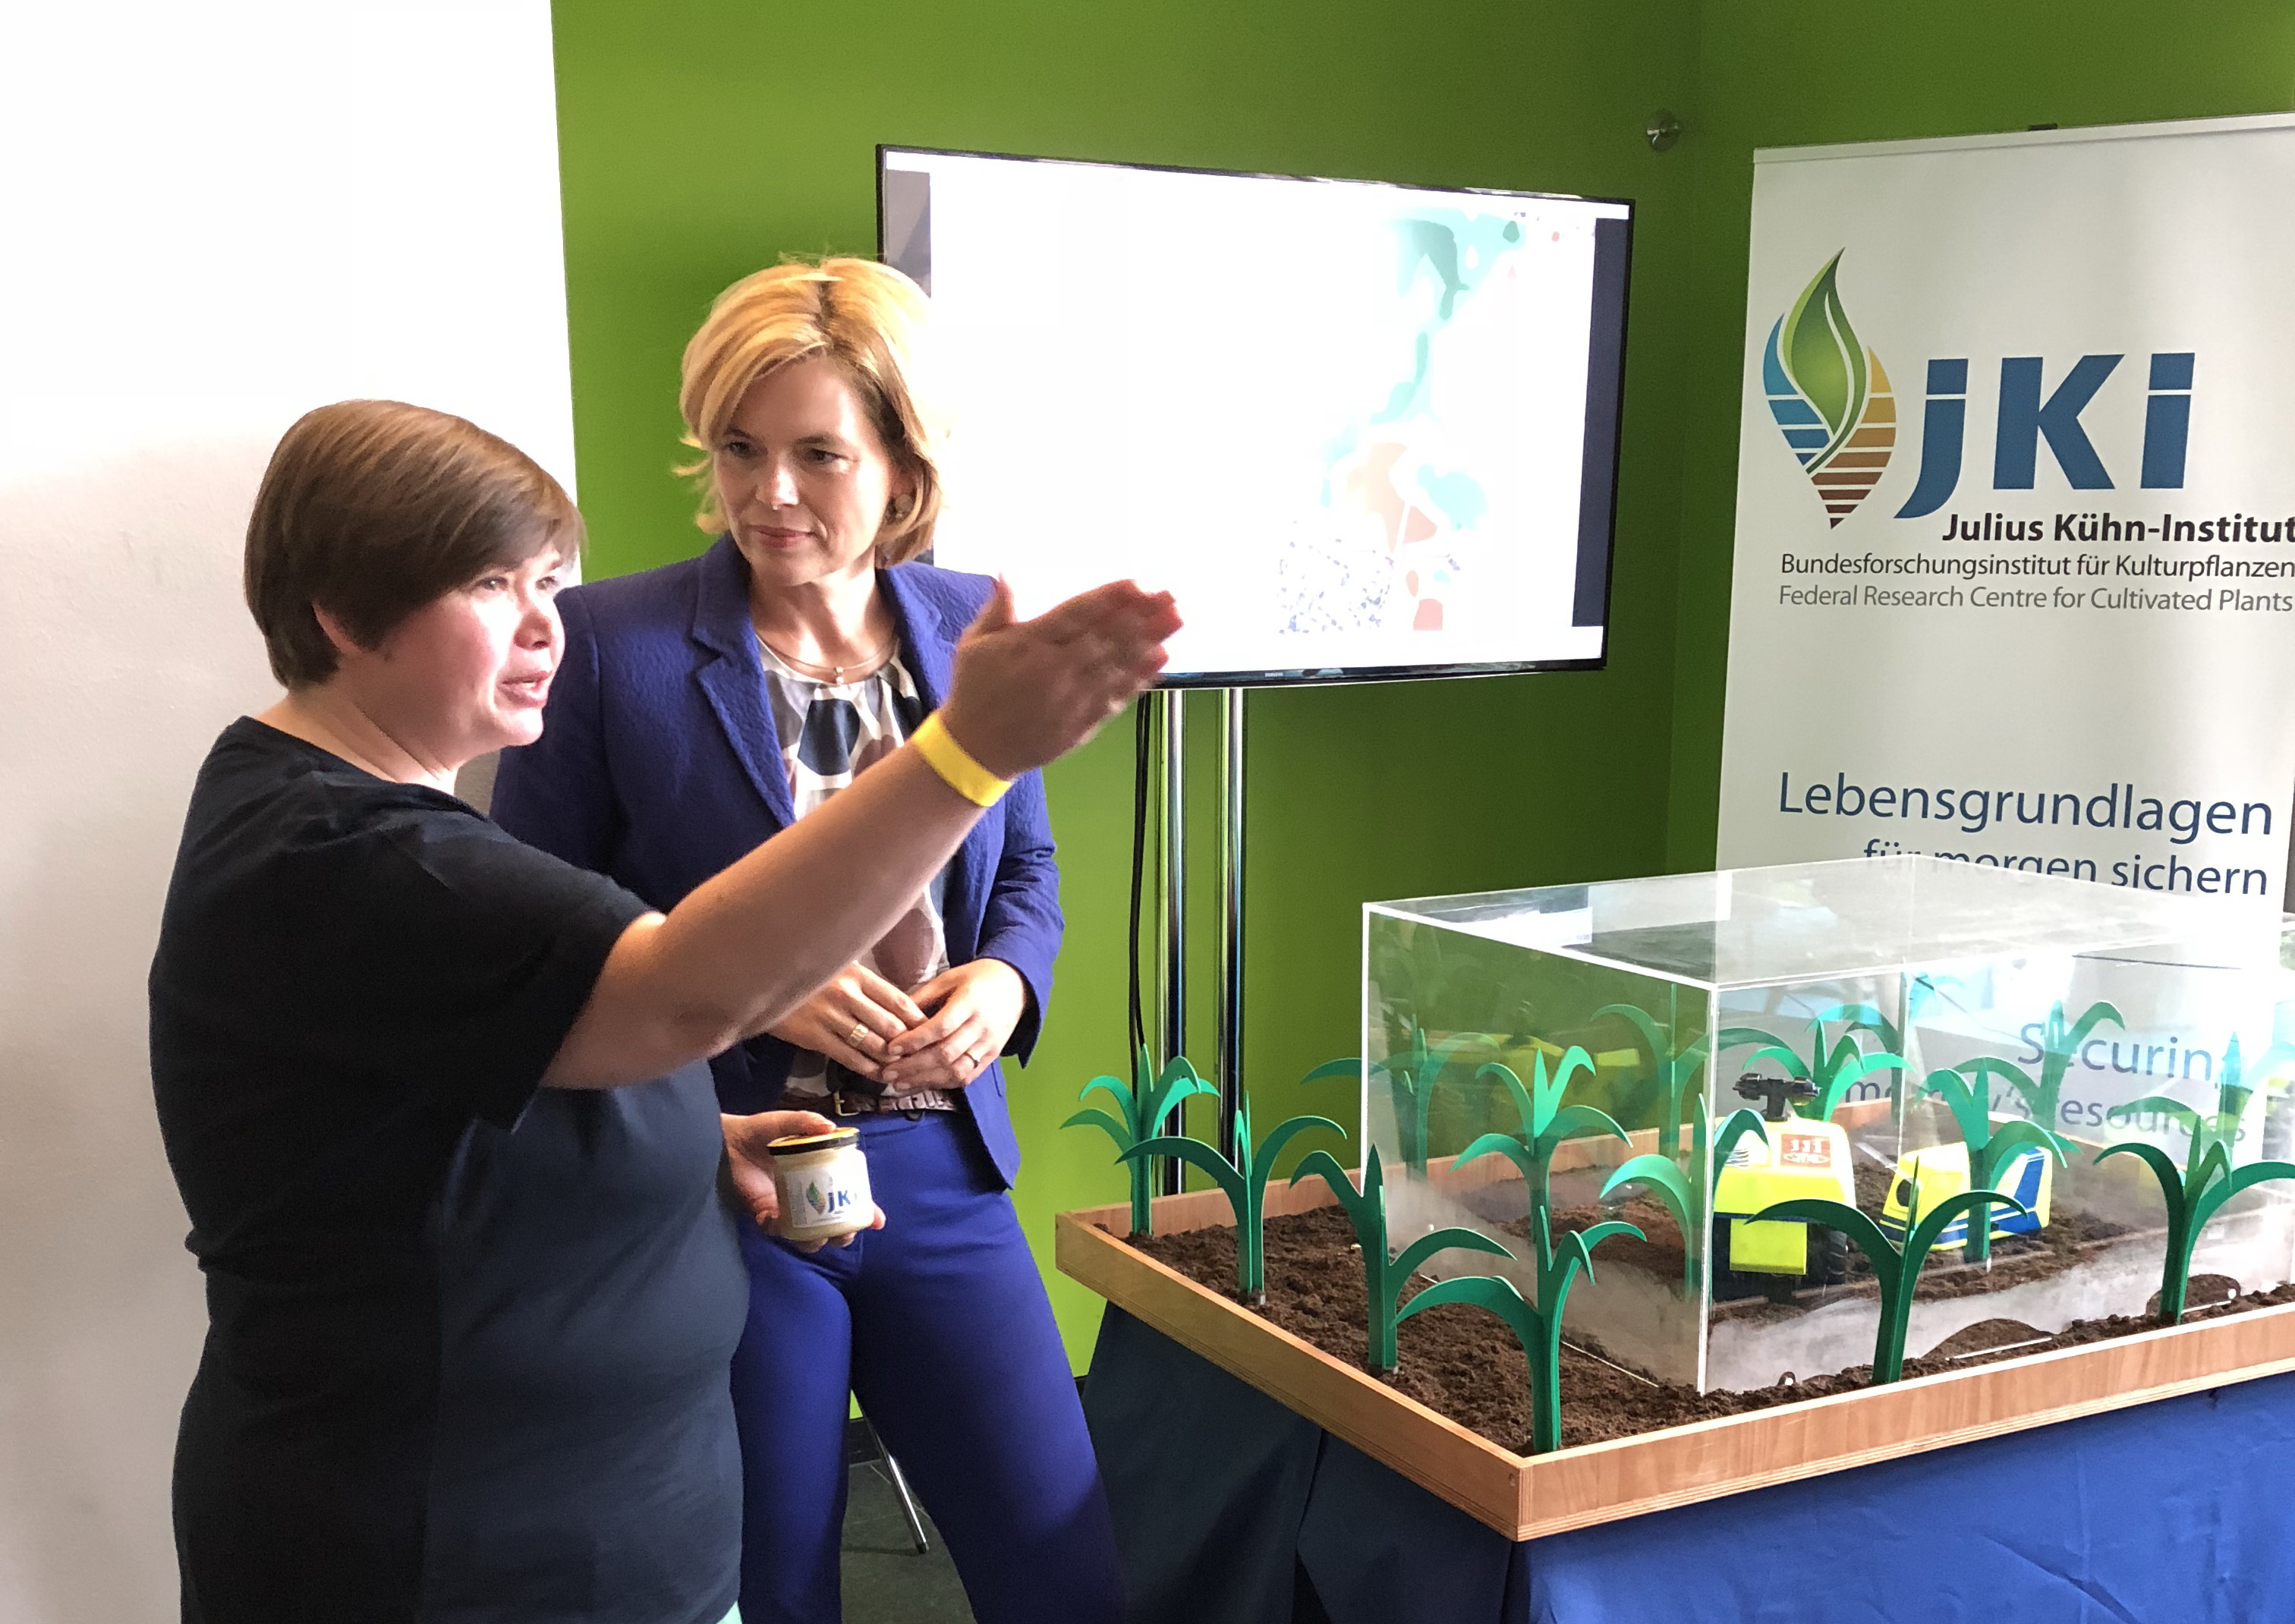 Landwirtschaftsministerin Julia Klöckner besuchte die JKI-Themenstände zum Tag der offenen Tür ihres Ministeriums